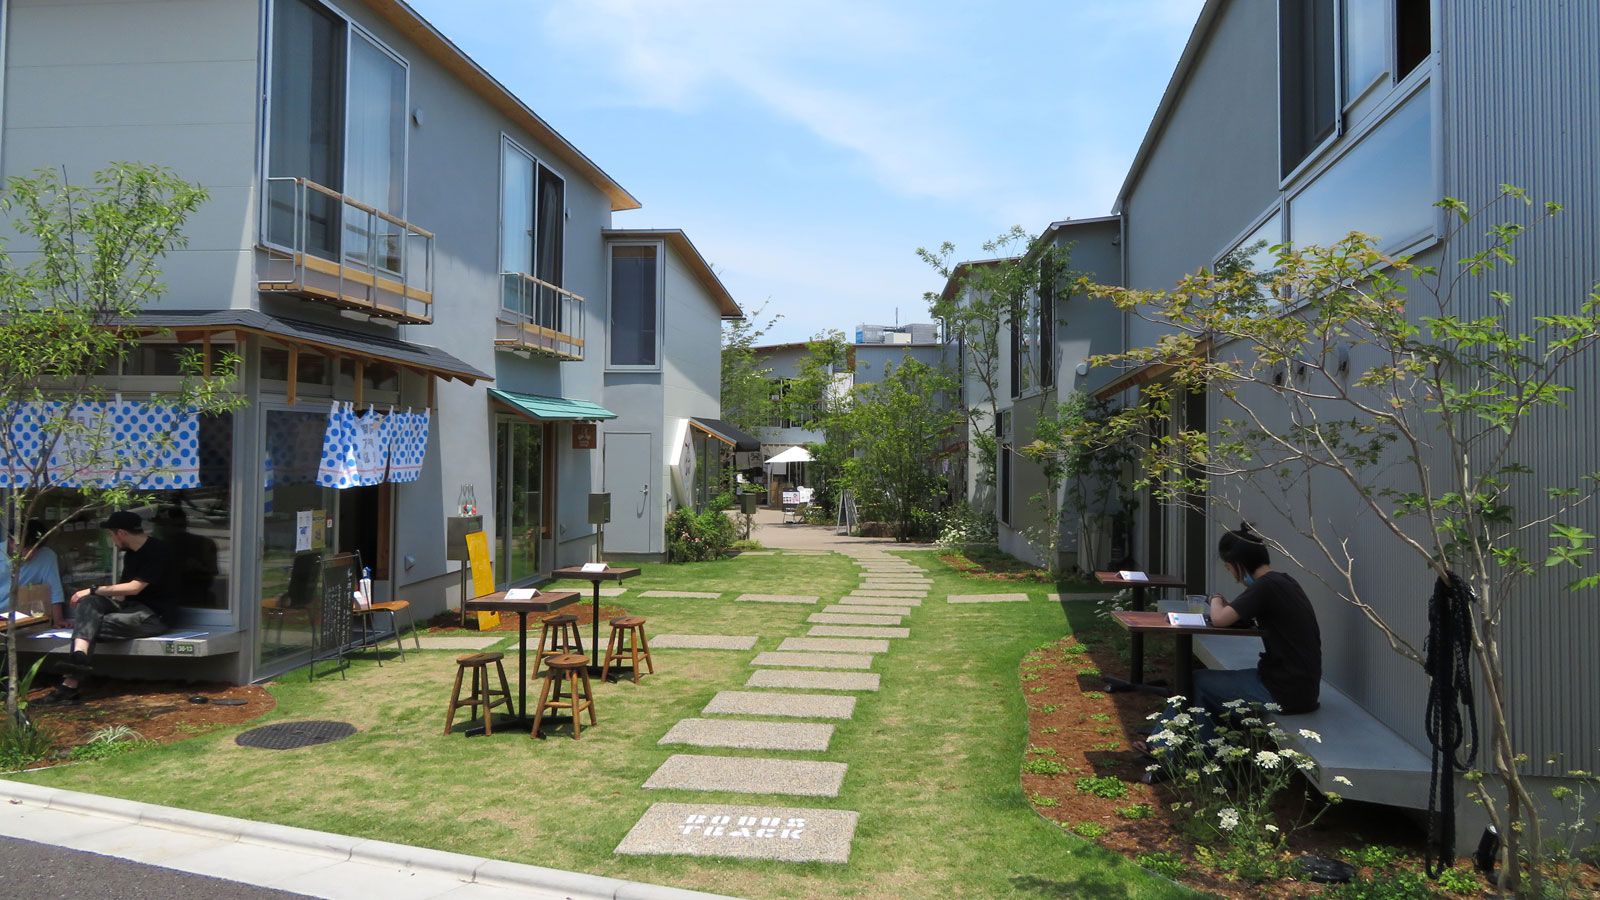 ｢下北沢｣新施設は日本の不動産概念を変えるか 開発地域しか価格が上がらないというジレンマ | 街･住まい | 東洋経済オンライン